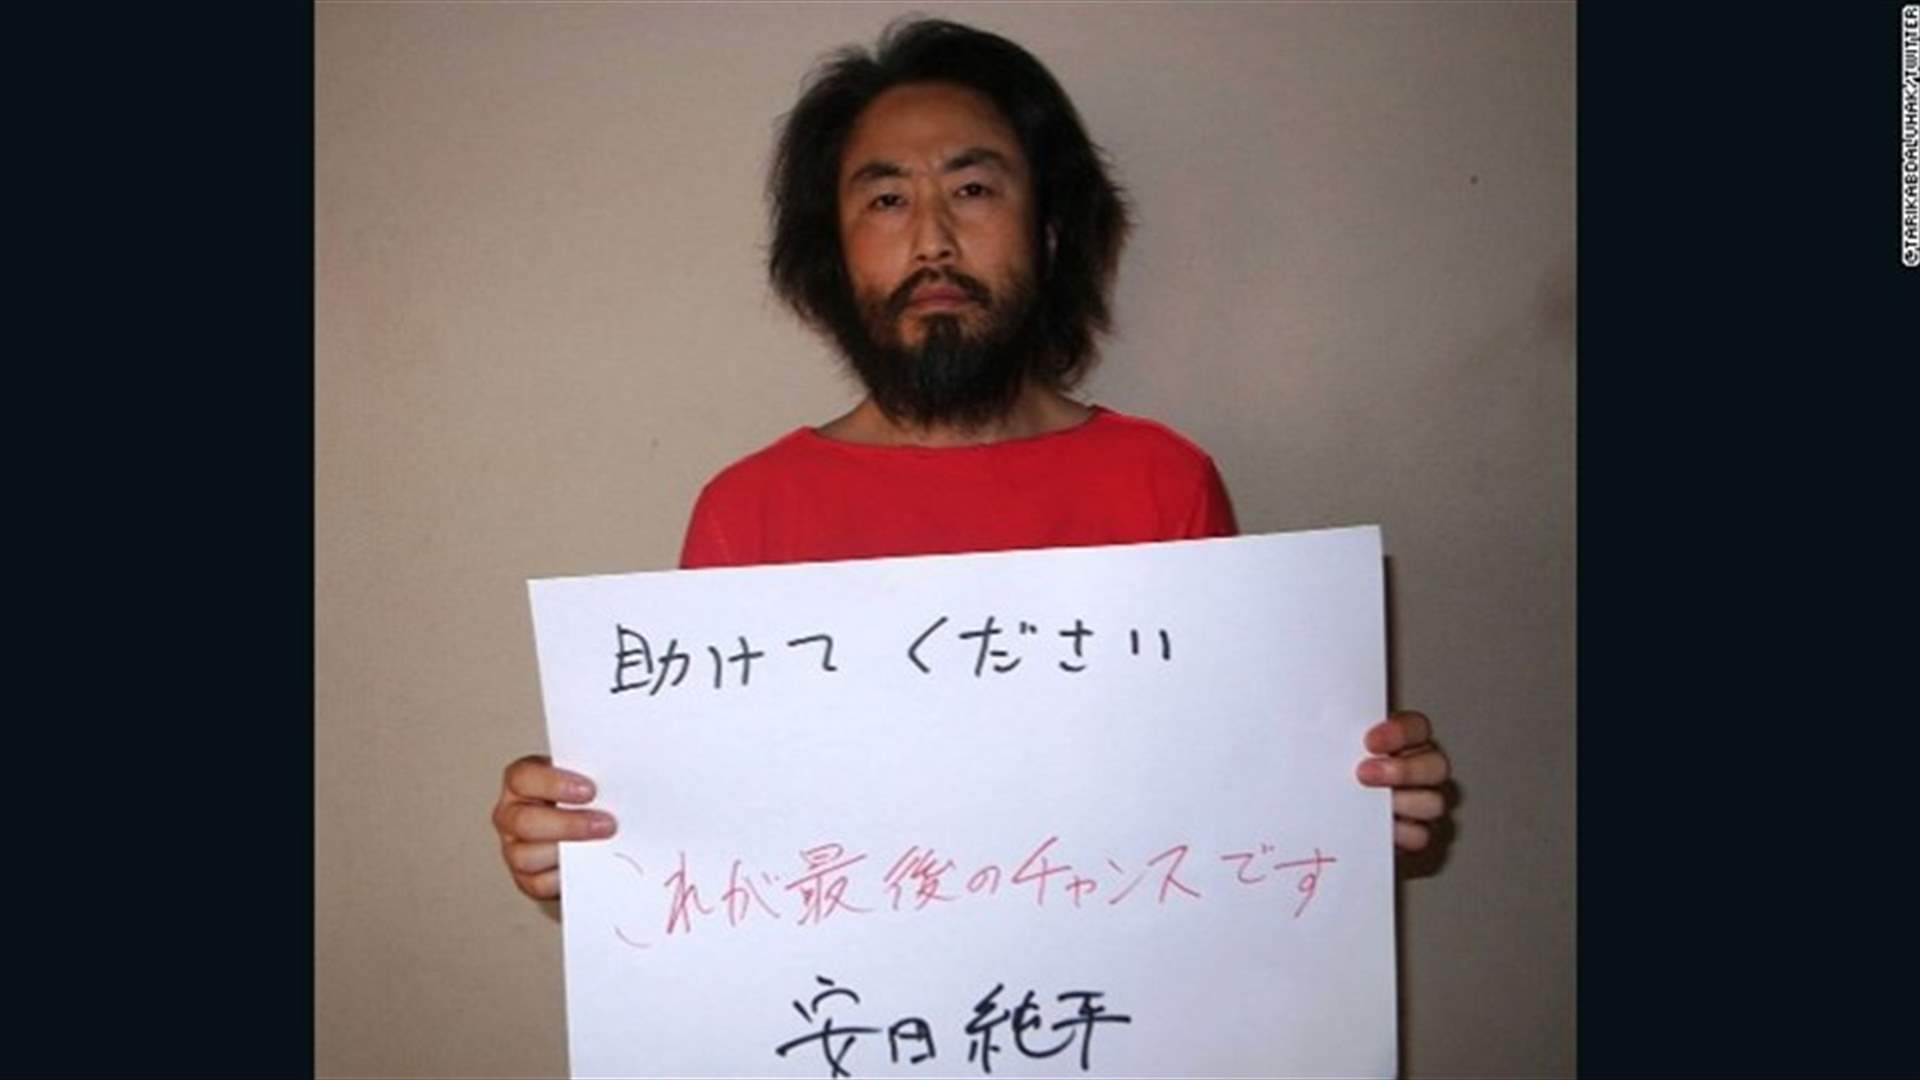  صورة جديدة لصحافي ياباني مفقود في سوريا